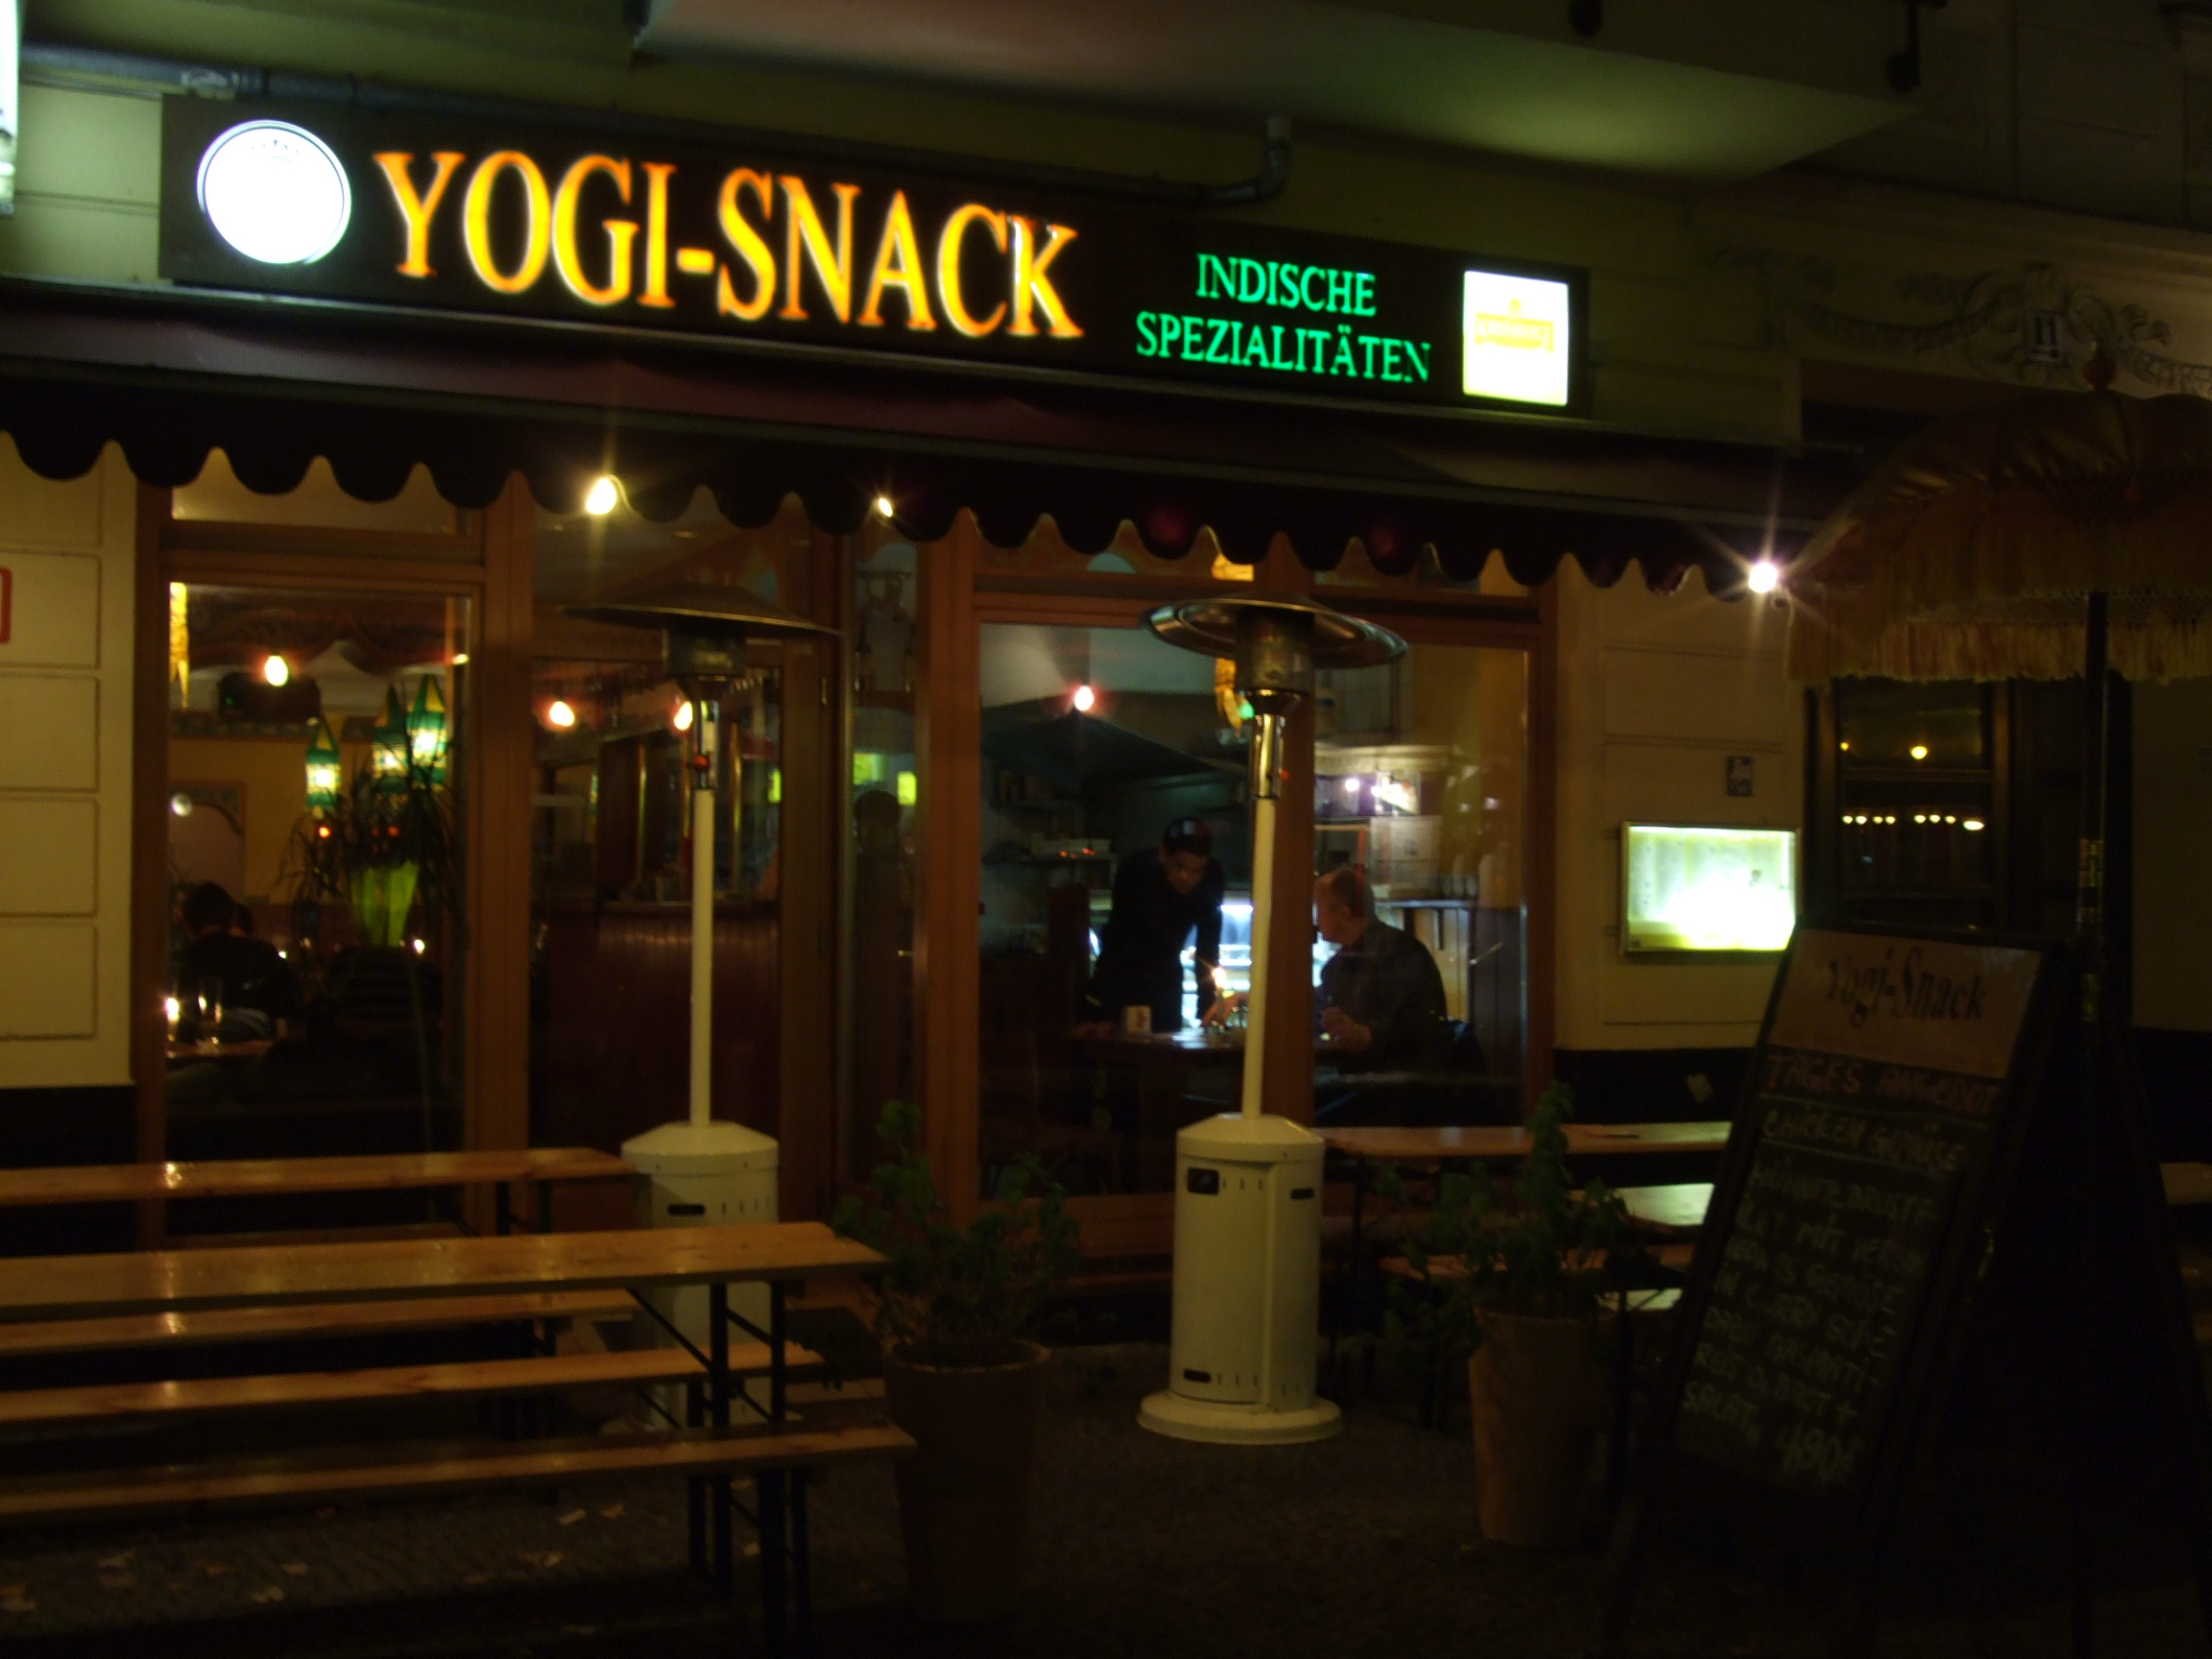 Das Indische Restaurant YOGI-SNACK in der Simon-Dach-Straße in Friedrichshain in Berlin bei Nacht im Novermber 2007. Photo: Kim Hartley.